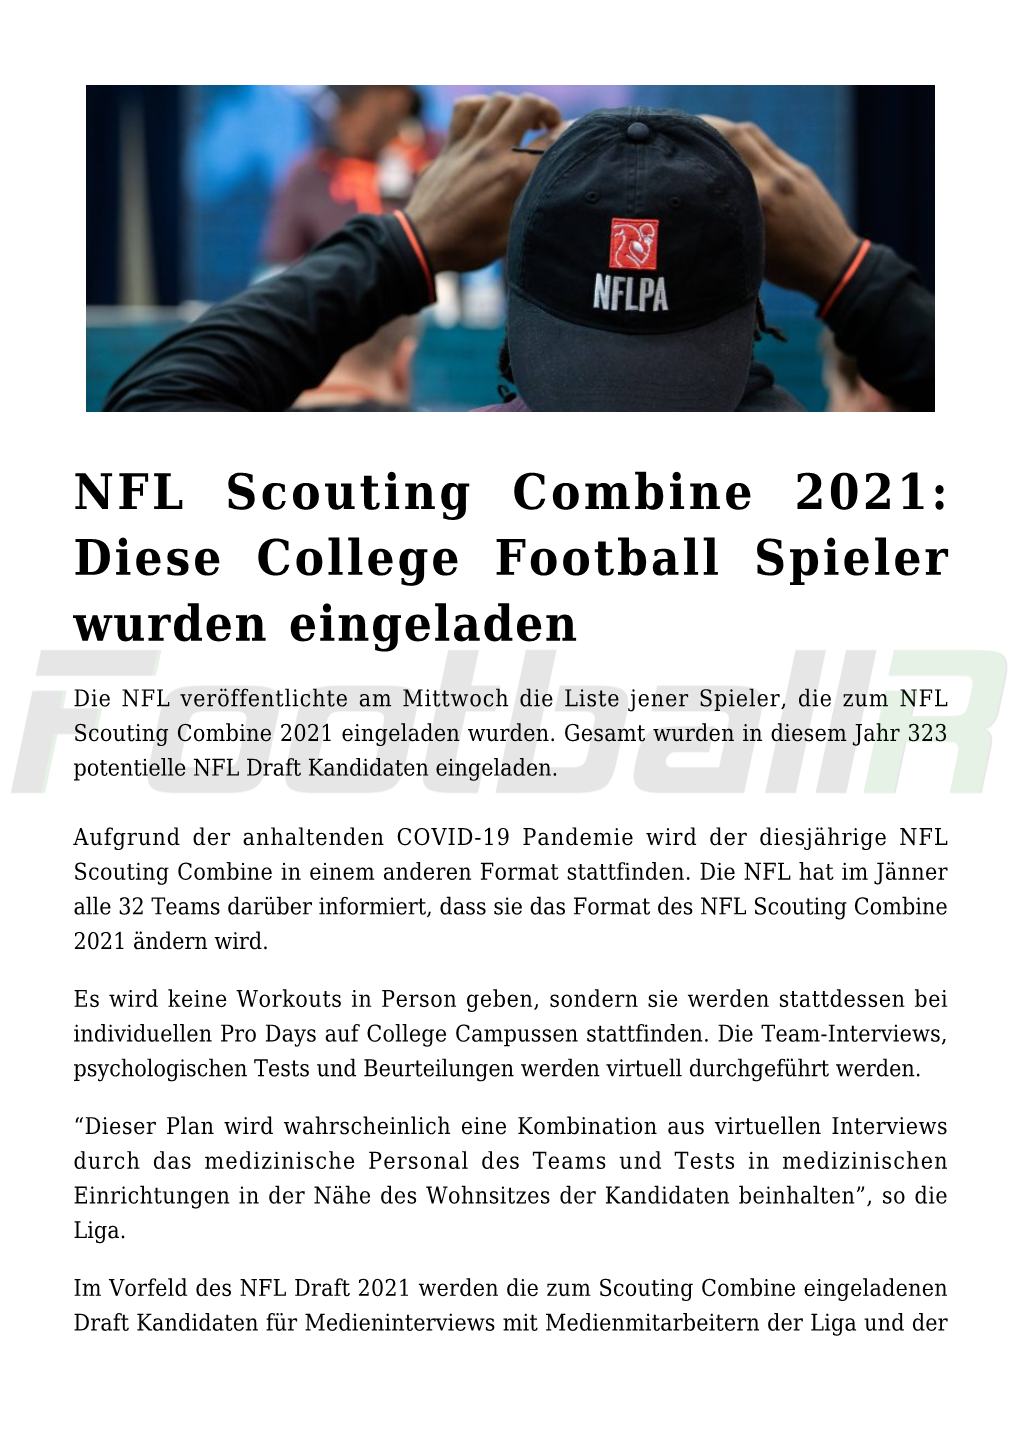 NFL Scouting Combine 2021: Diese College Football Spieler Wurden Eingeladen